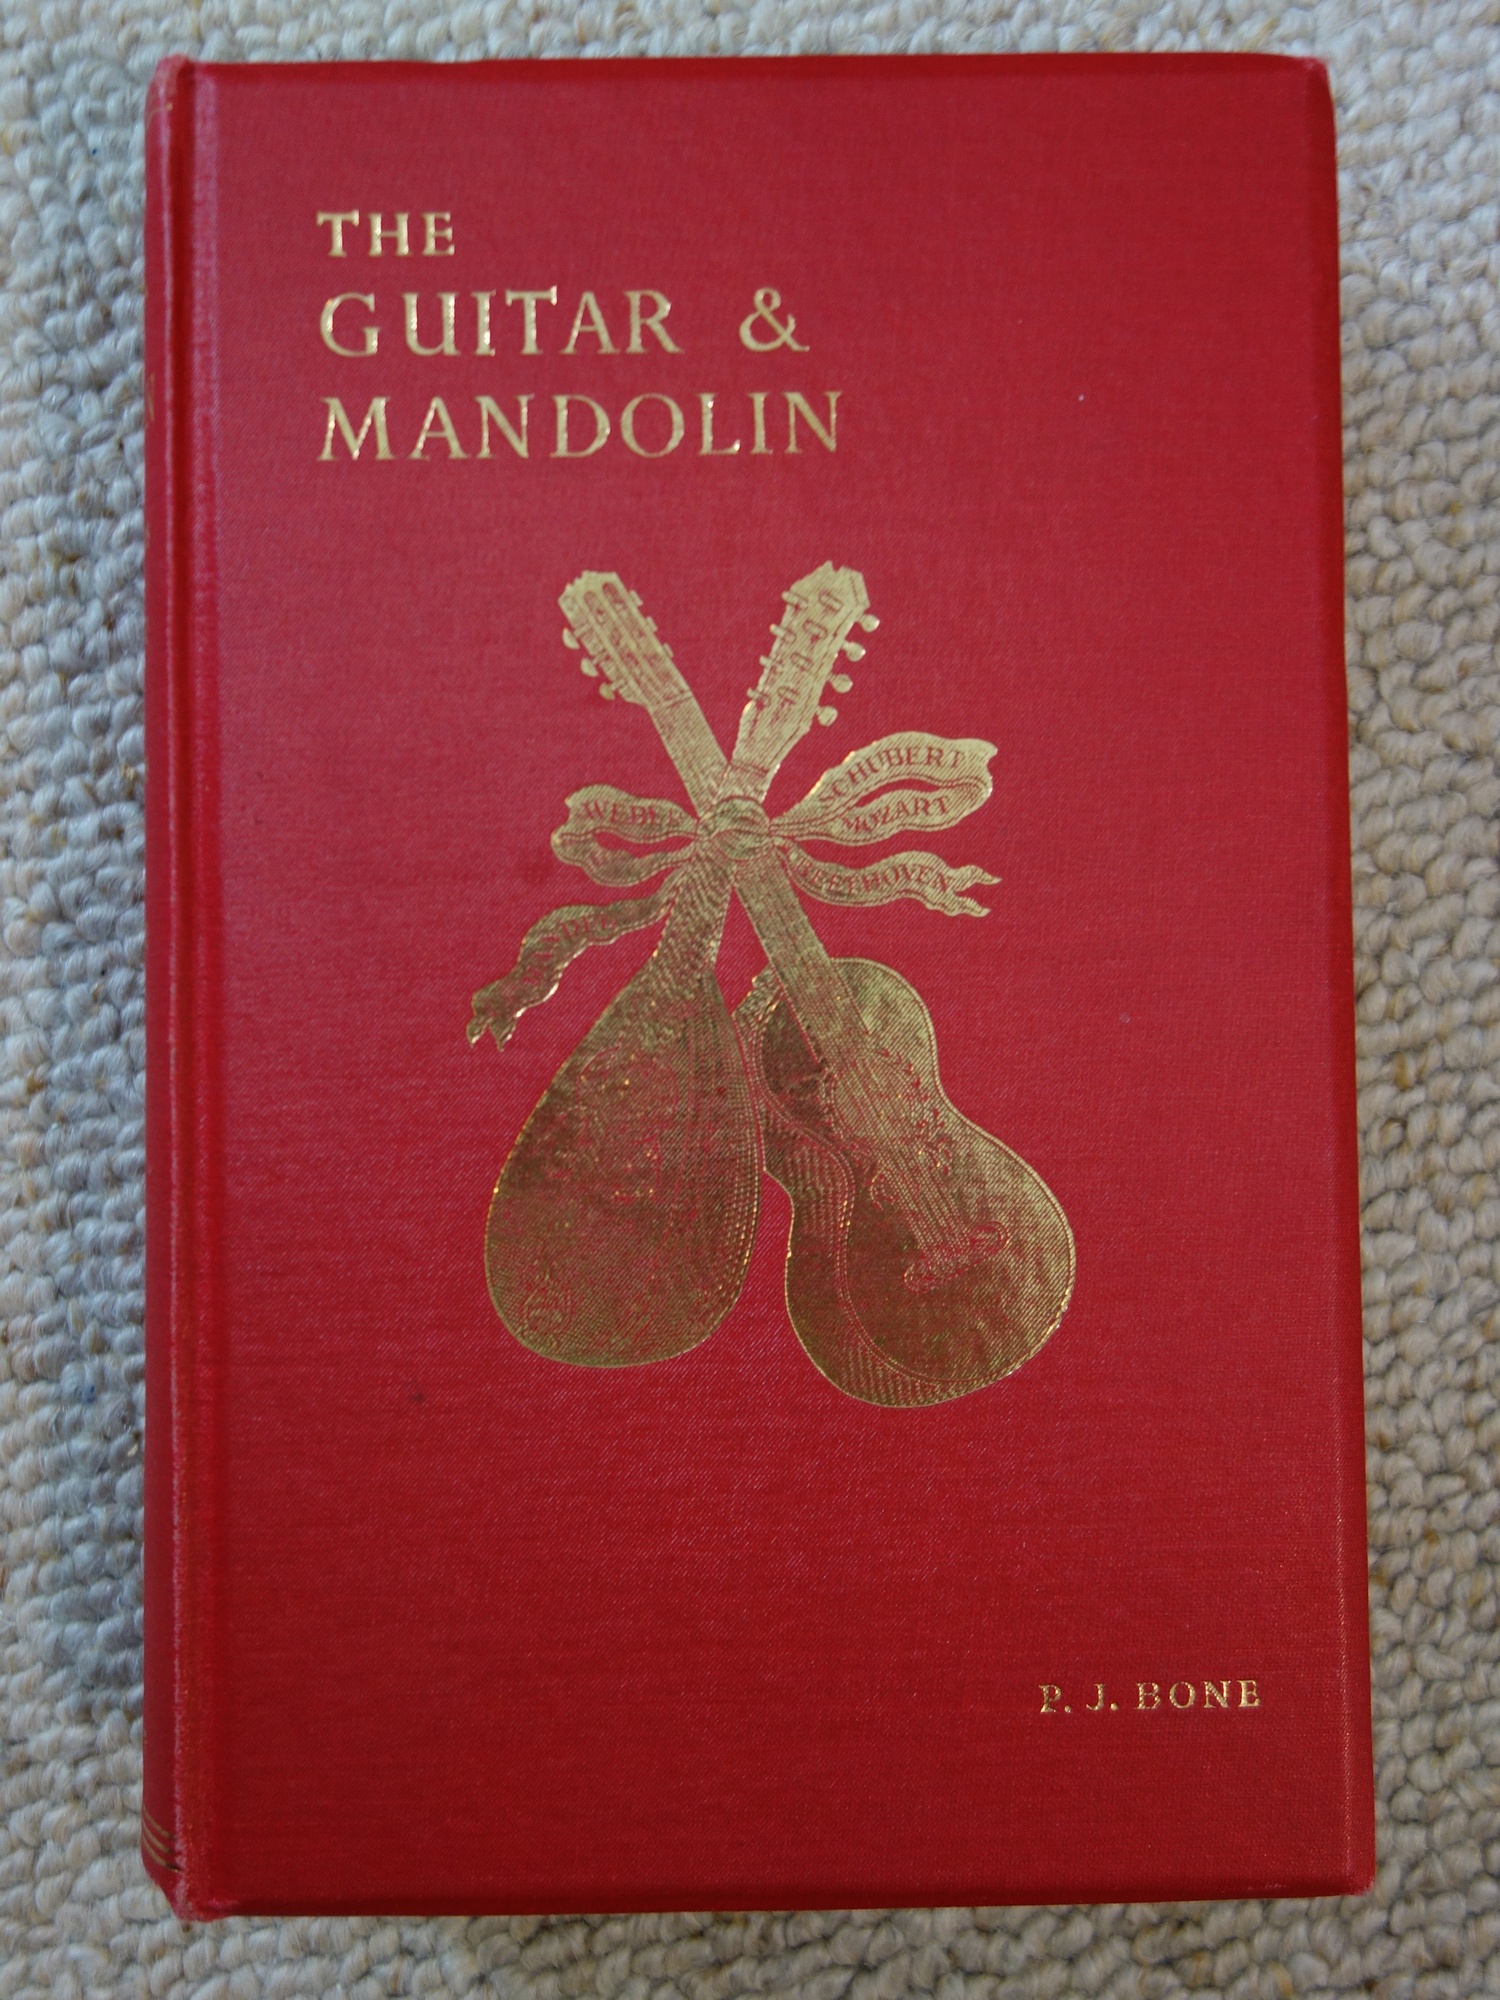 The Guitar & Mandolin (P. J. Bone)